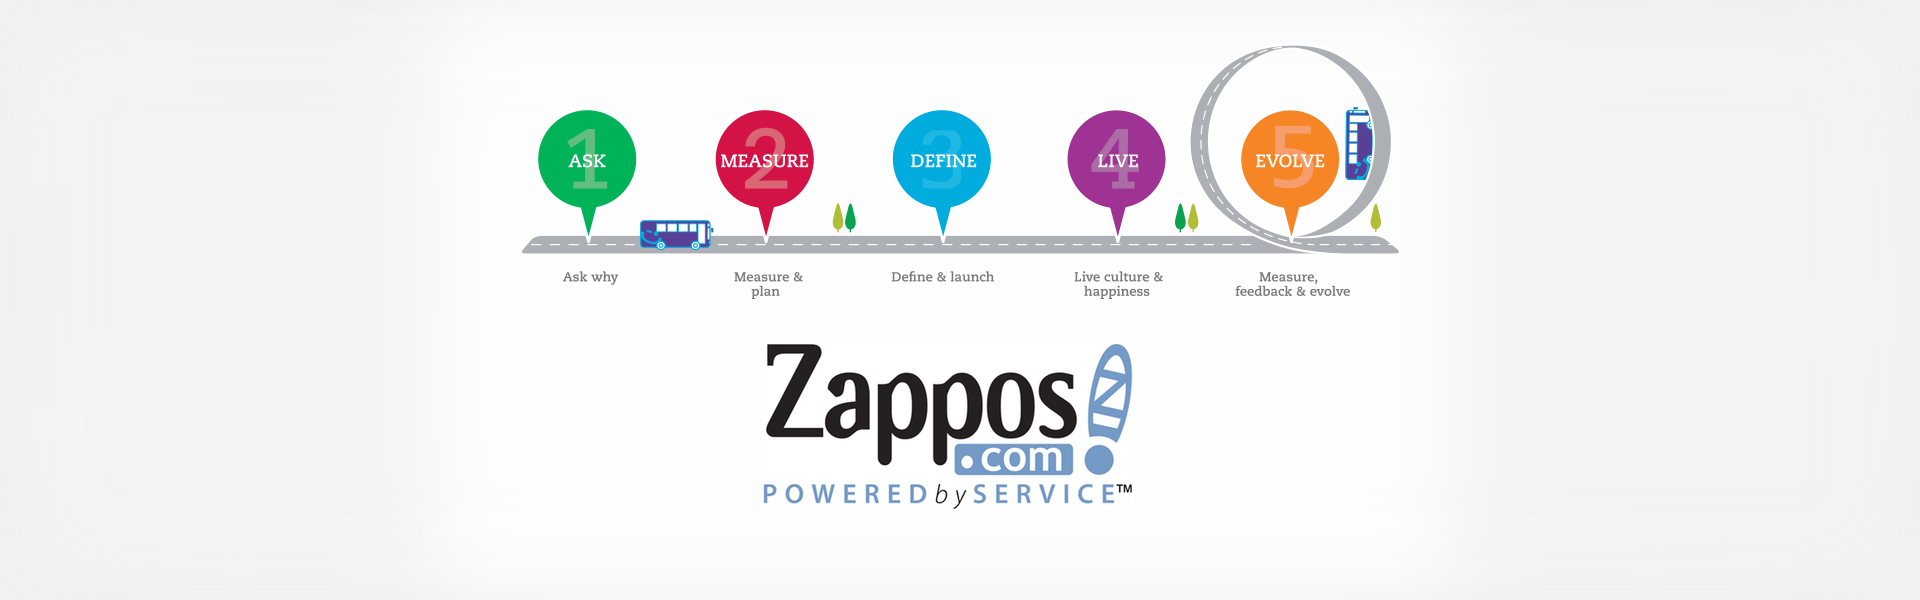 Zappos case analysis